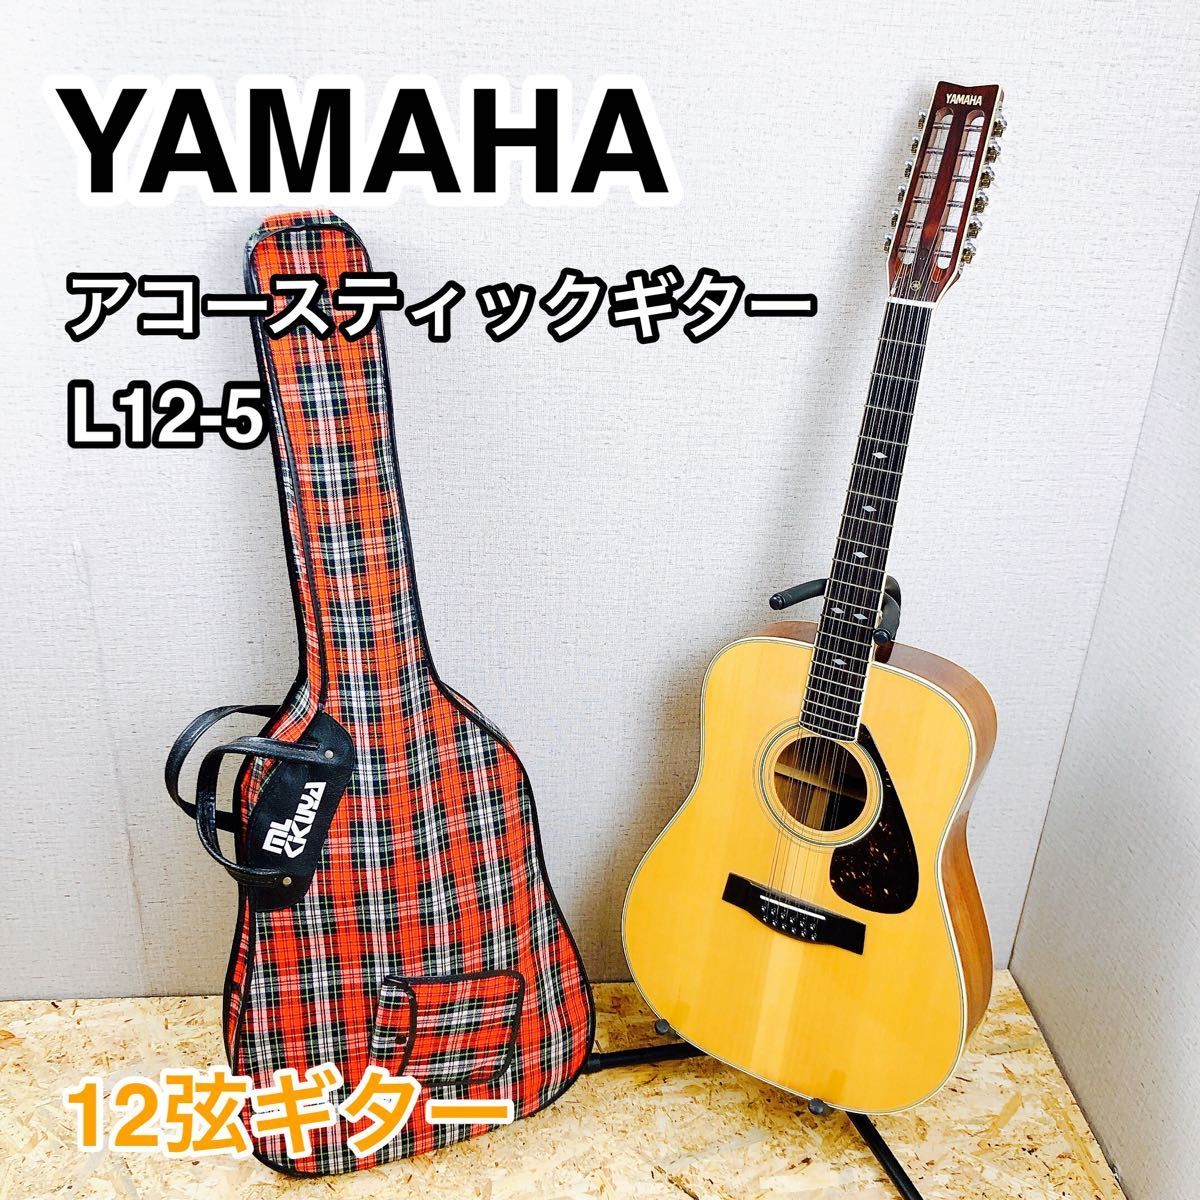 YAMAHA アコースティックギター L12-5 12弦ギター ビンテージ